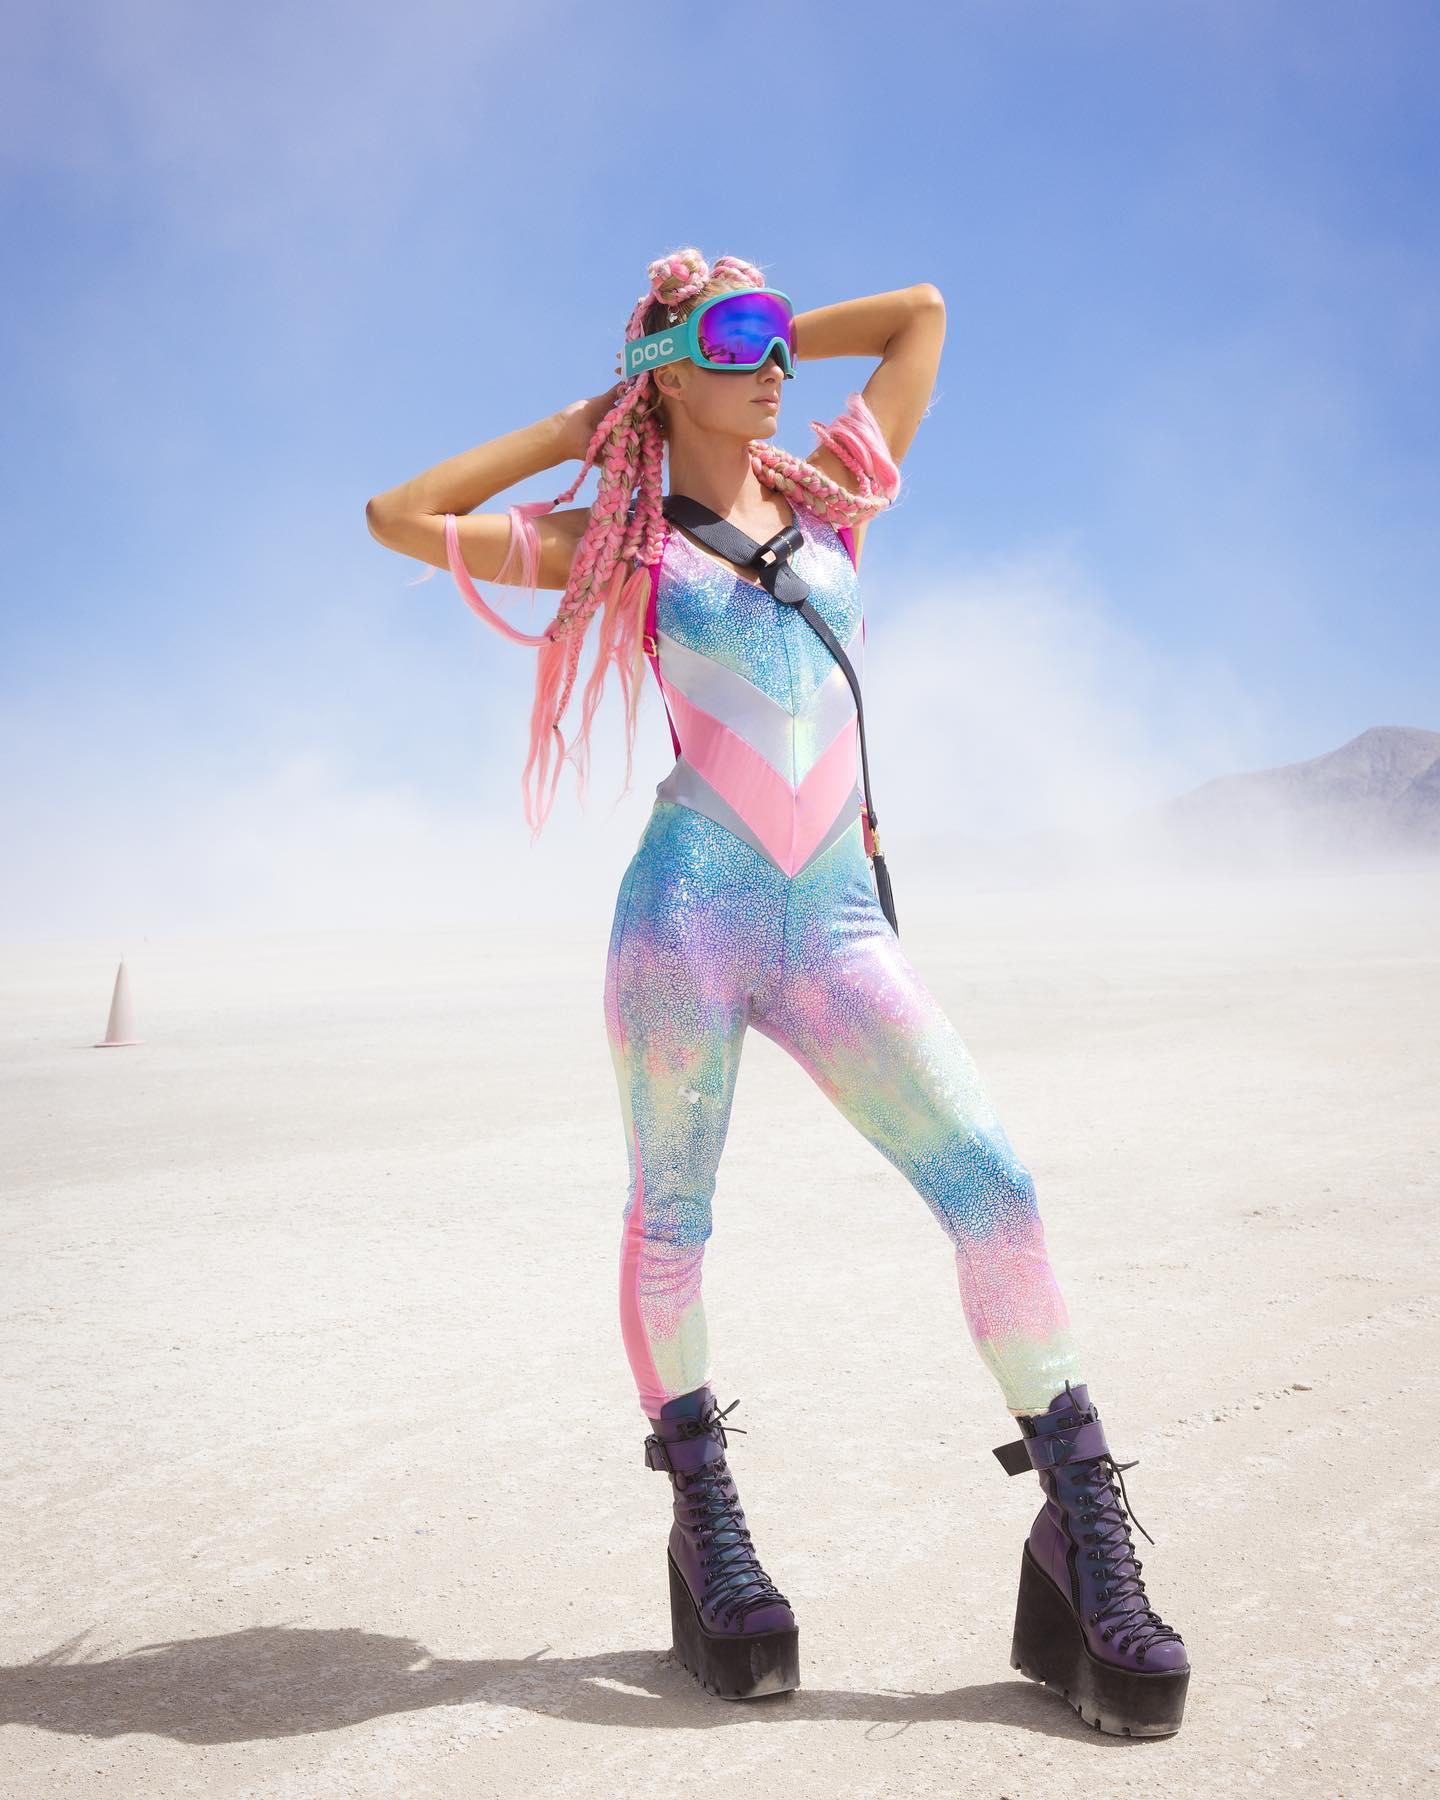 Paris Hilton at Burning Man 2022